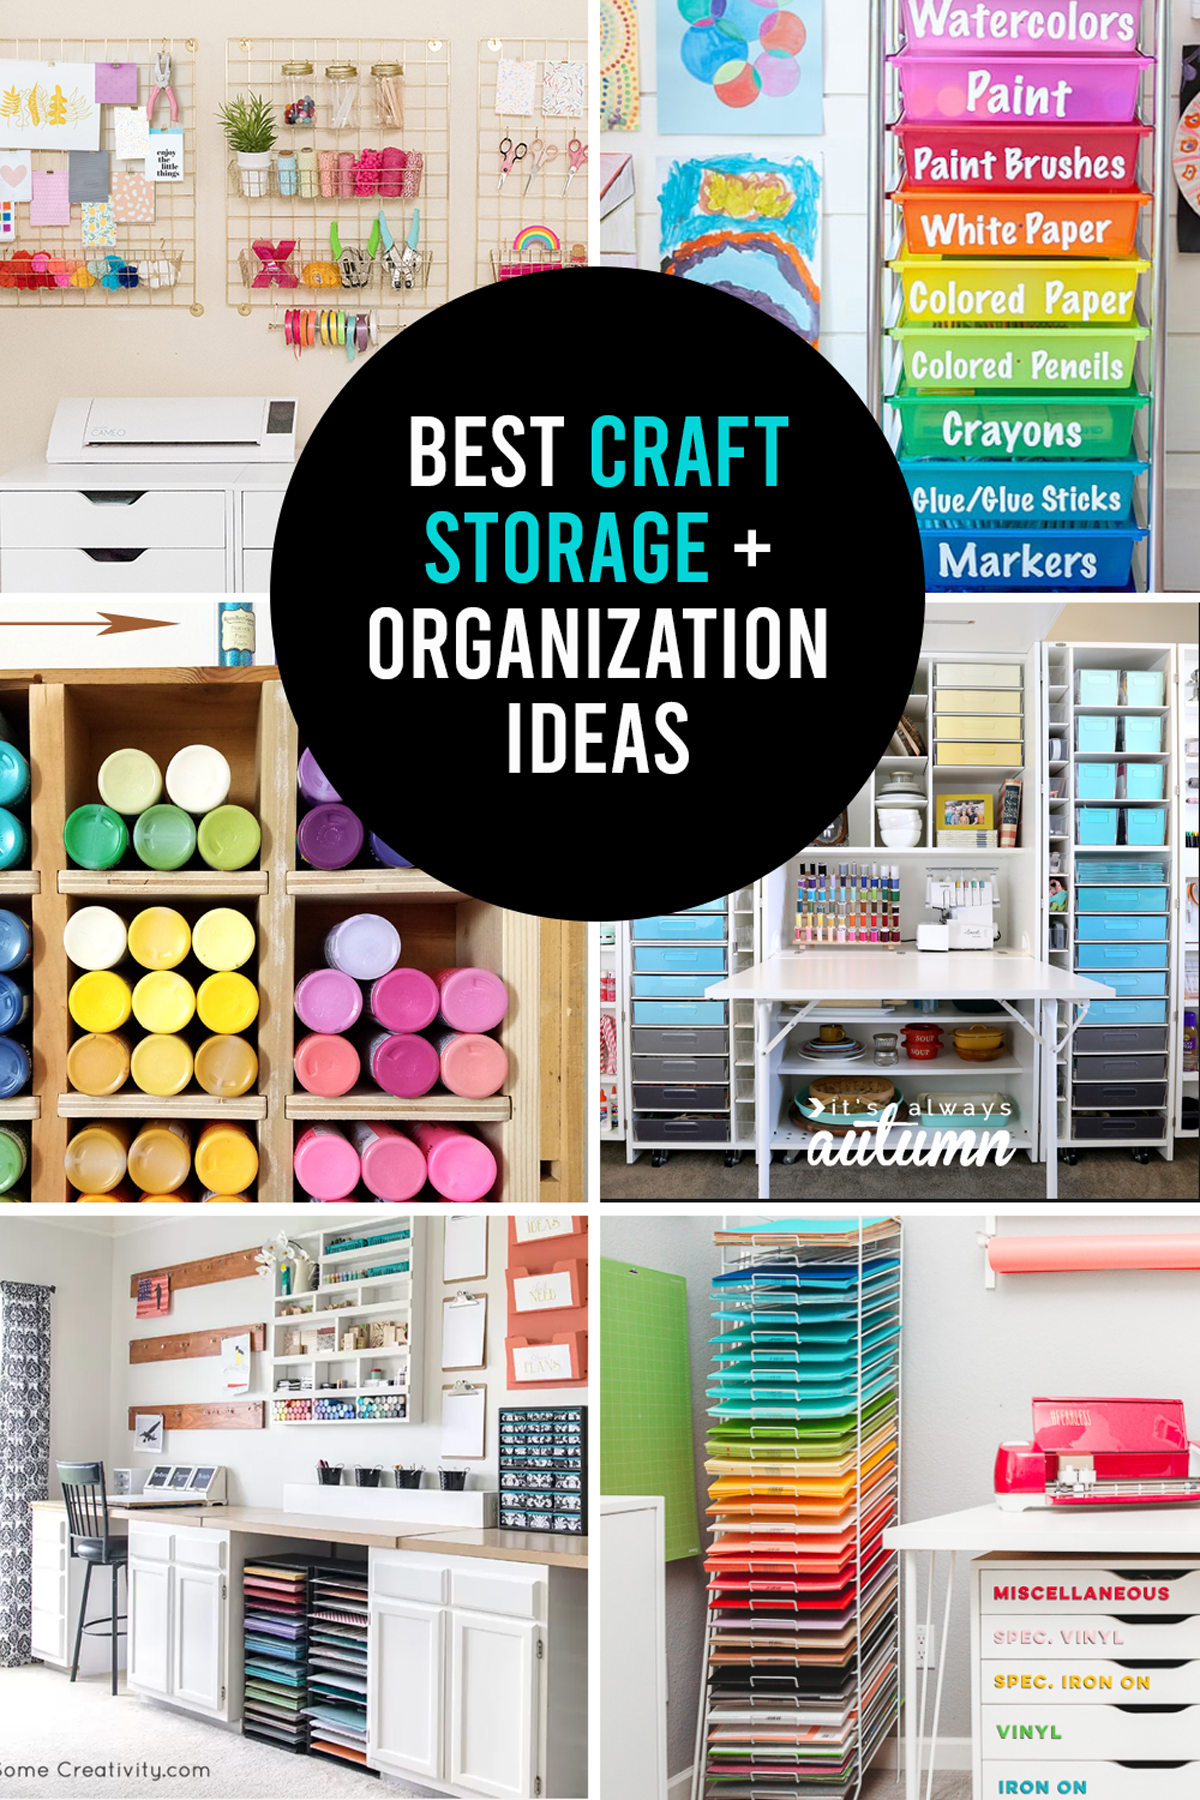 Craft Room Organization Ideas & Storage Tips - Wonder Forest